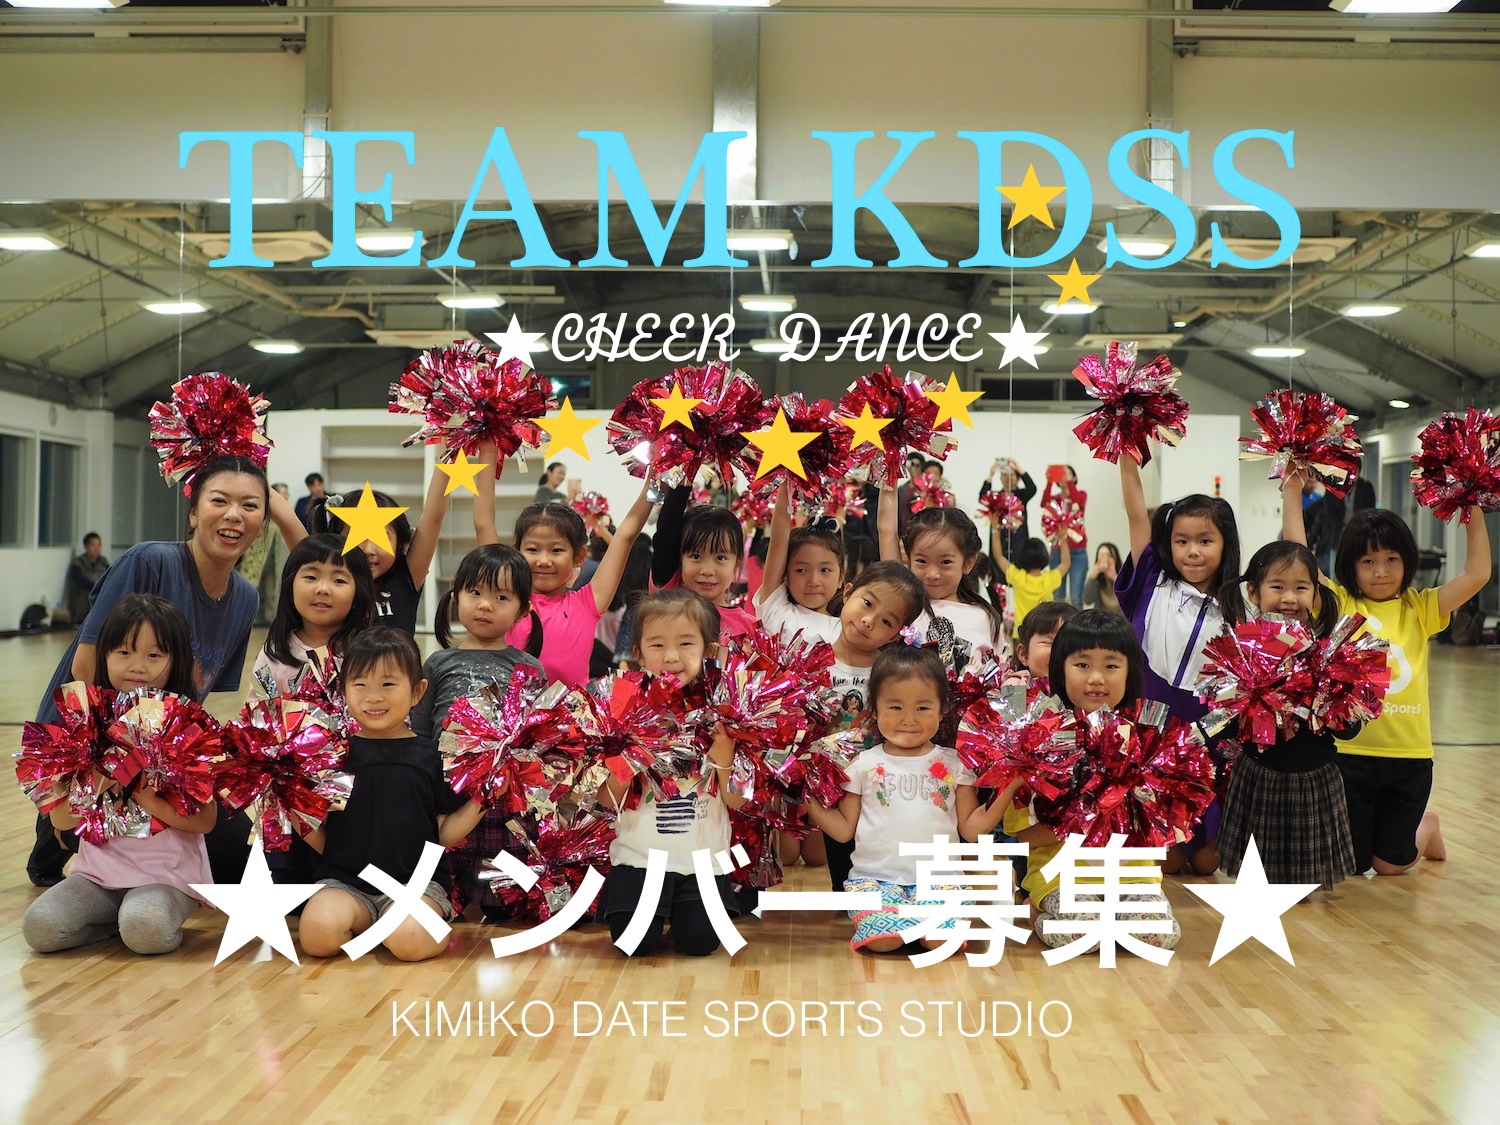 チアダンスチーム Team Kdss 初代メンバー募集 Kimiko Date Sports Studio スポル品川大井町 Kimiko Date Sports Studio